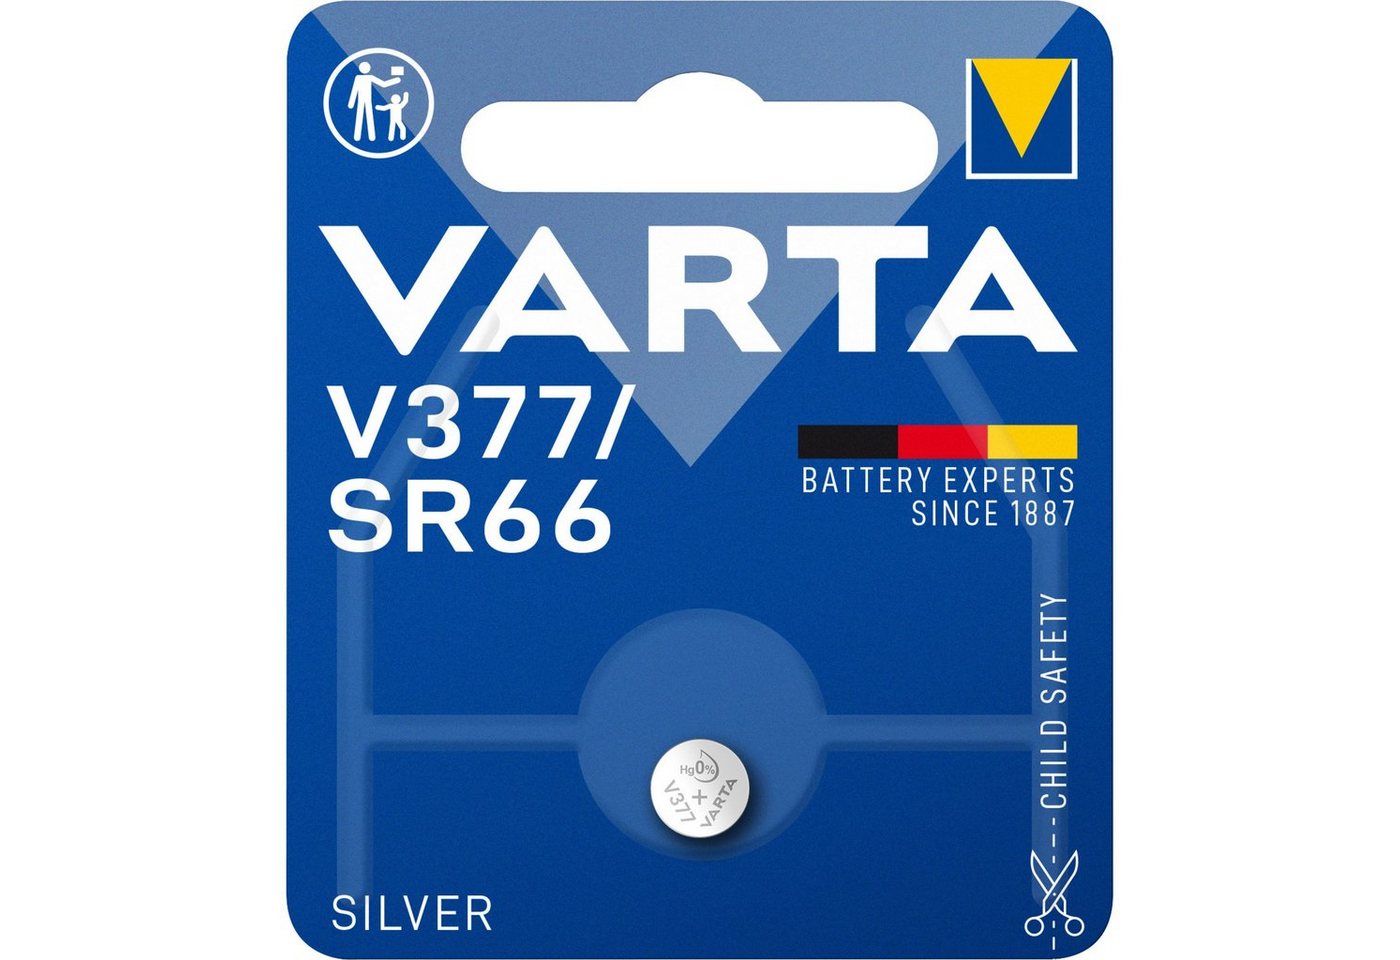 VARTA Professional V377 Batterie von VARTA